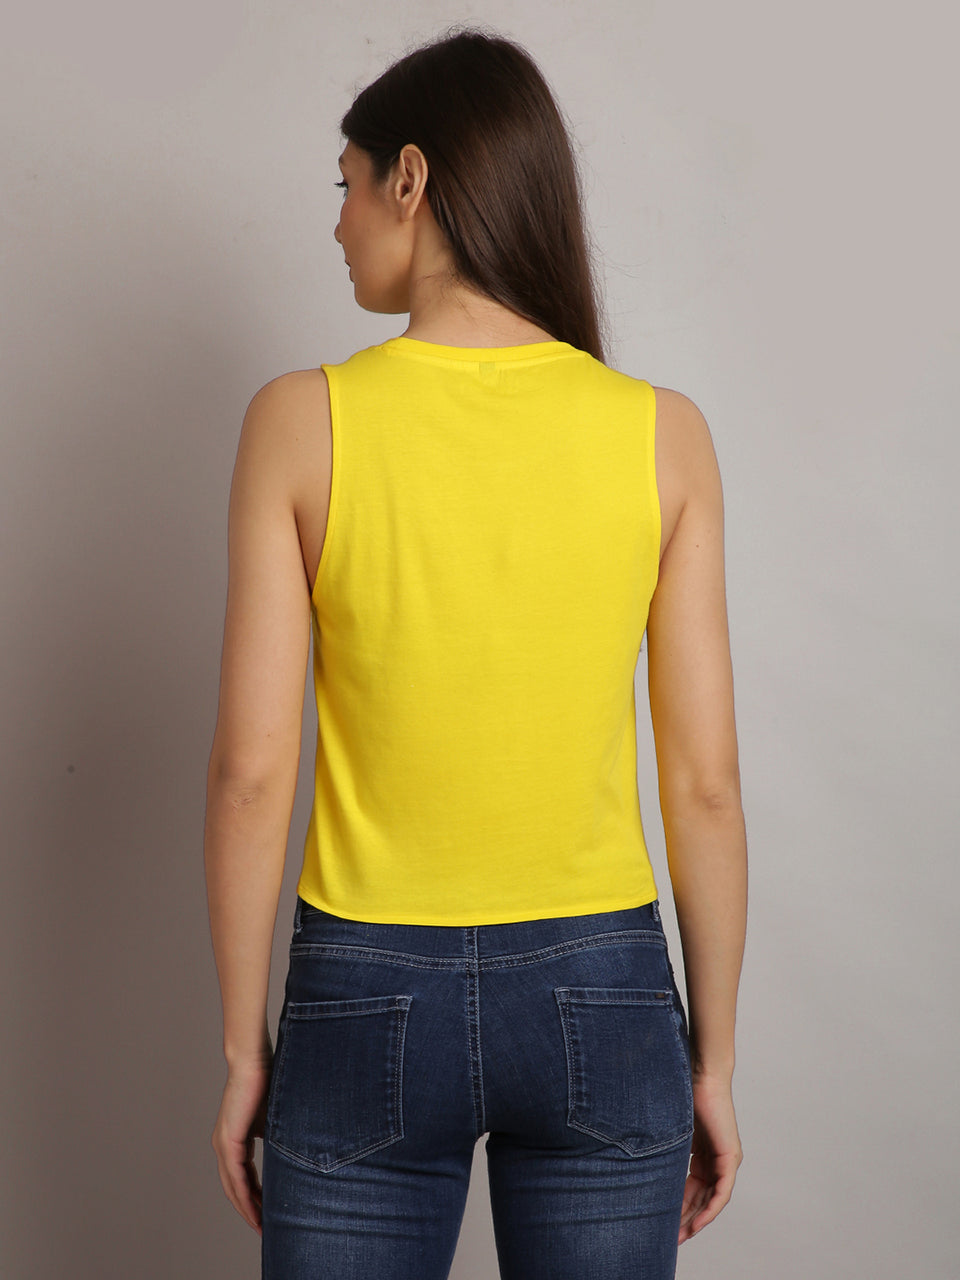 women yellow sleeveless printed tank tops